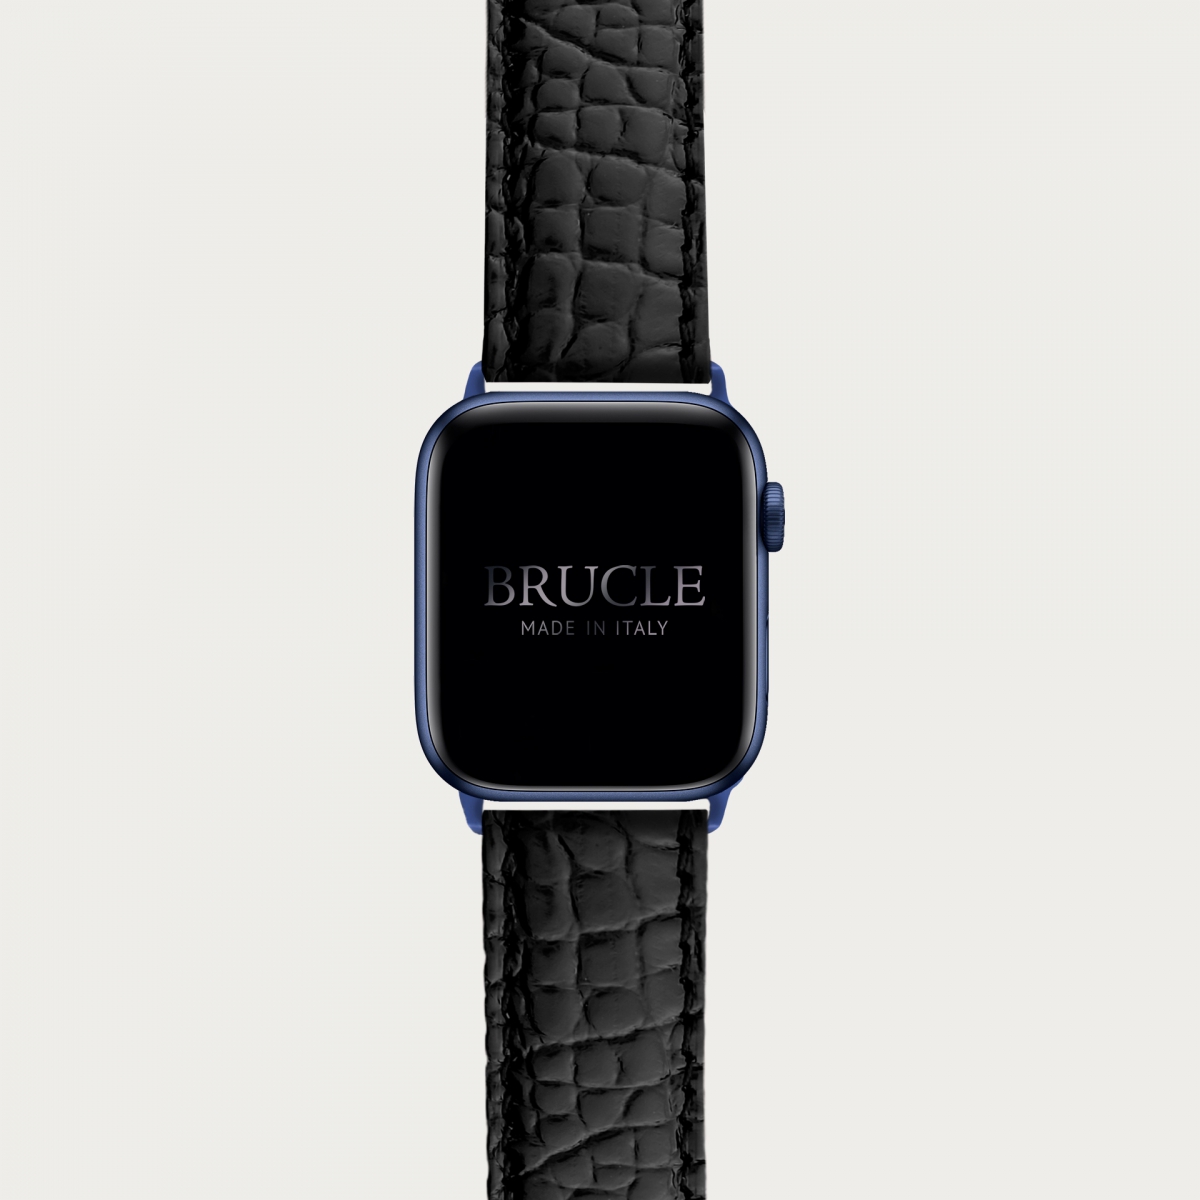 Correa de reloj en genuino caimán compatible con Apple Watch / Samsung smartwatch, negro